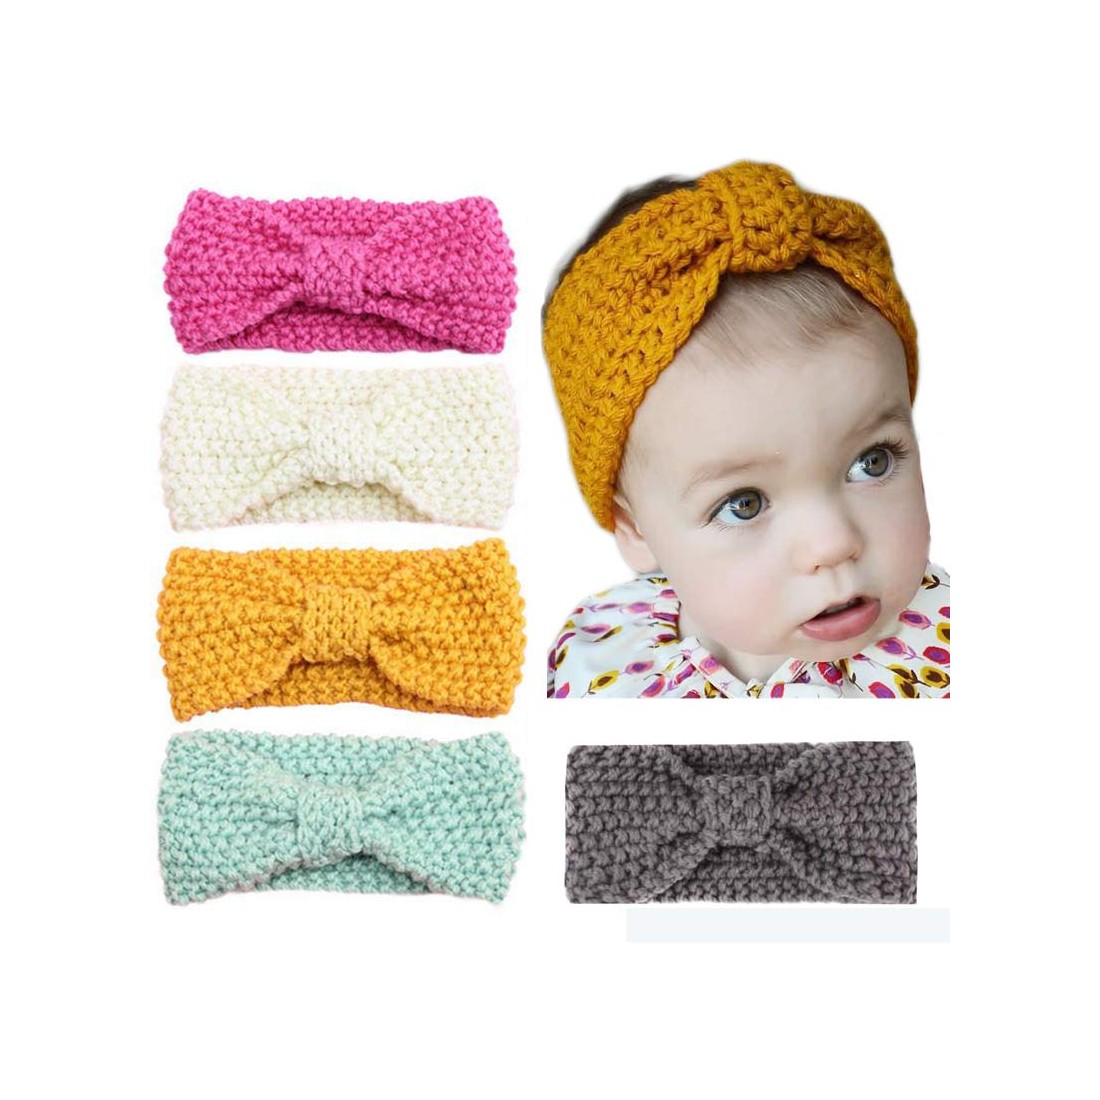 Celeste - Luxury Knitted Baby Headwrap